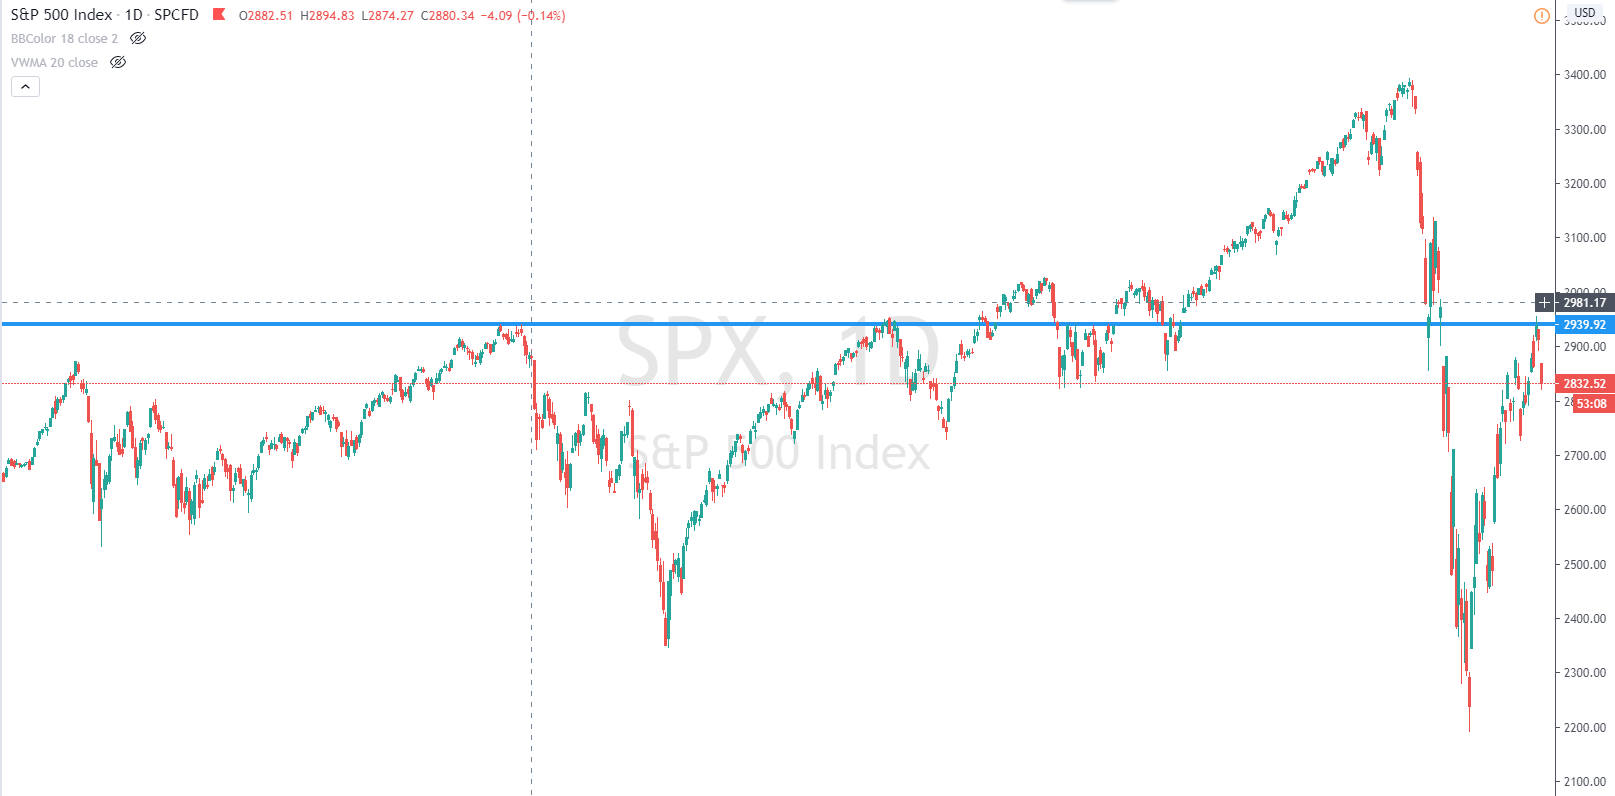 S&P500 index avril 2020